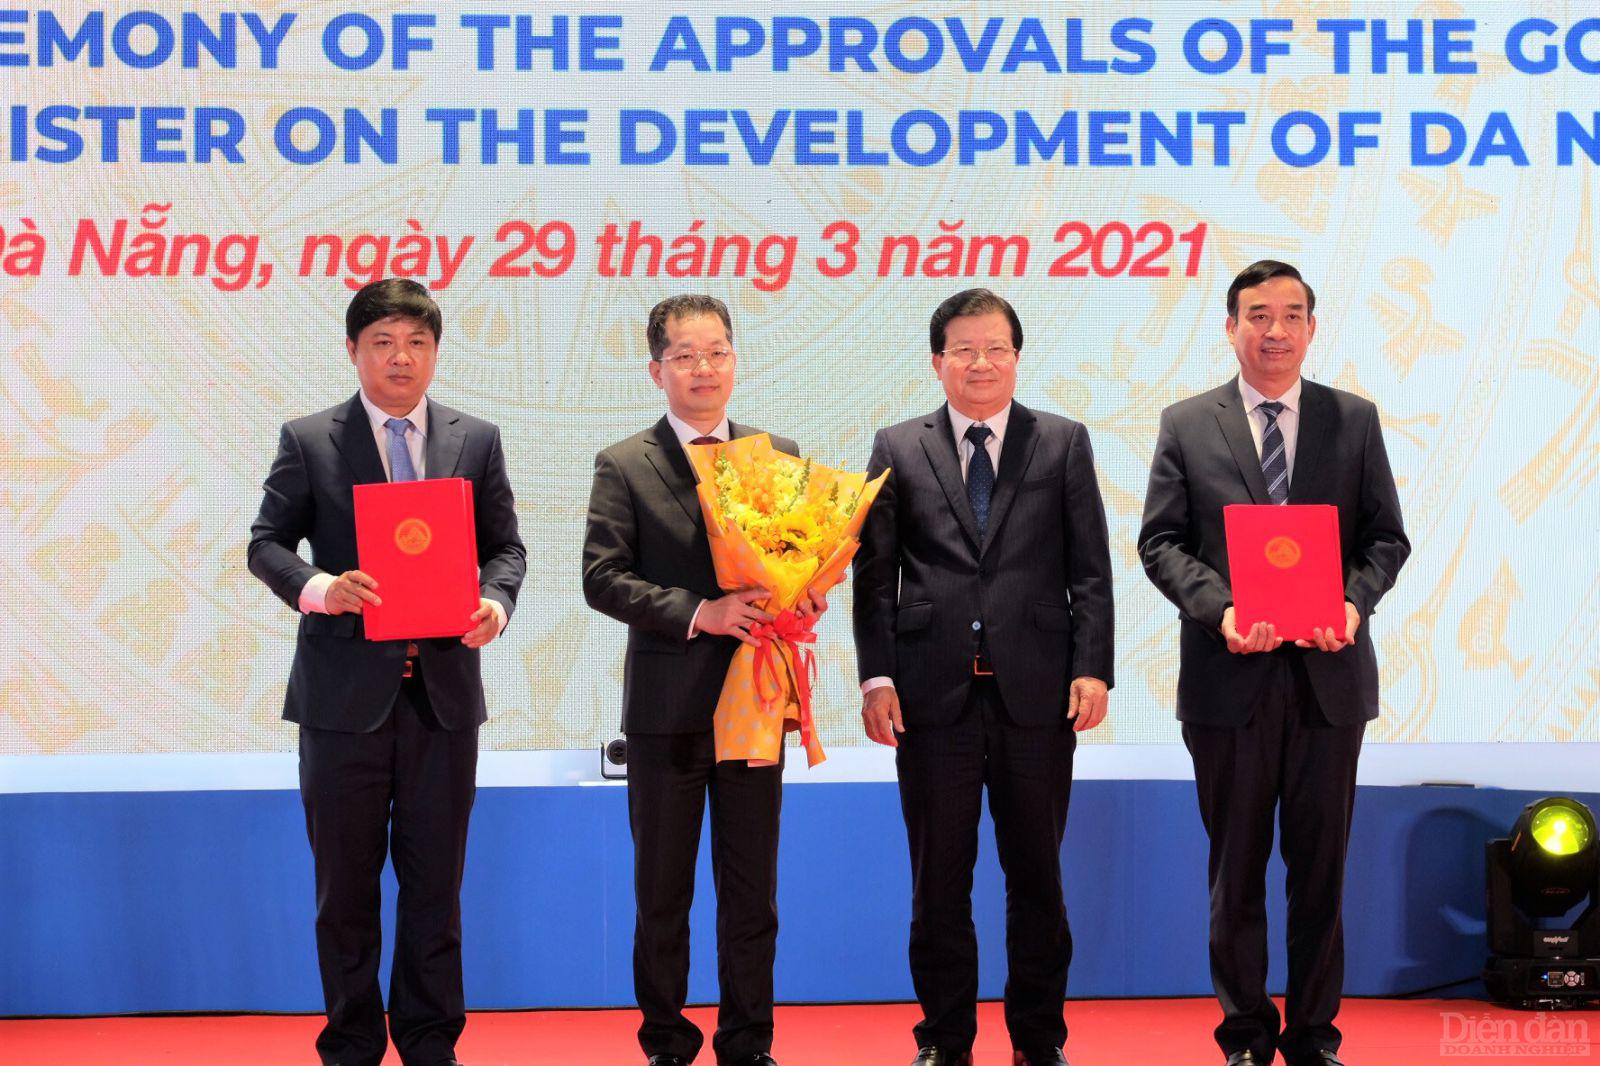 Phó Thủ tướng Trịnh Đình Dũng trao các Nghị định, Quyết định của Chính phủ và Thủ tướng Chính phủ về quy hoạch chung Đà Nẵng.